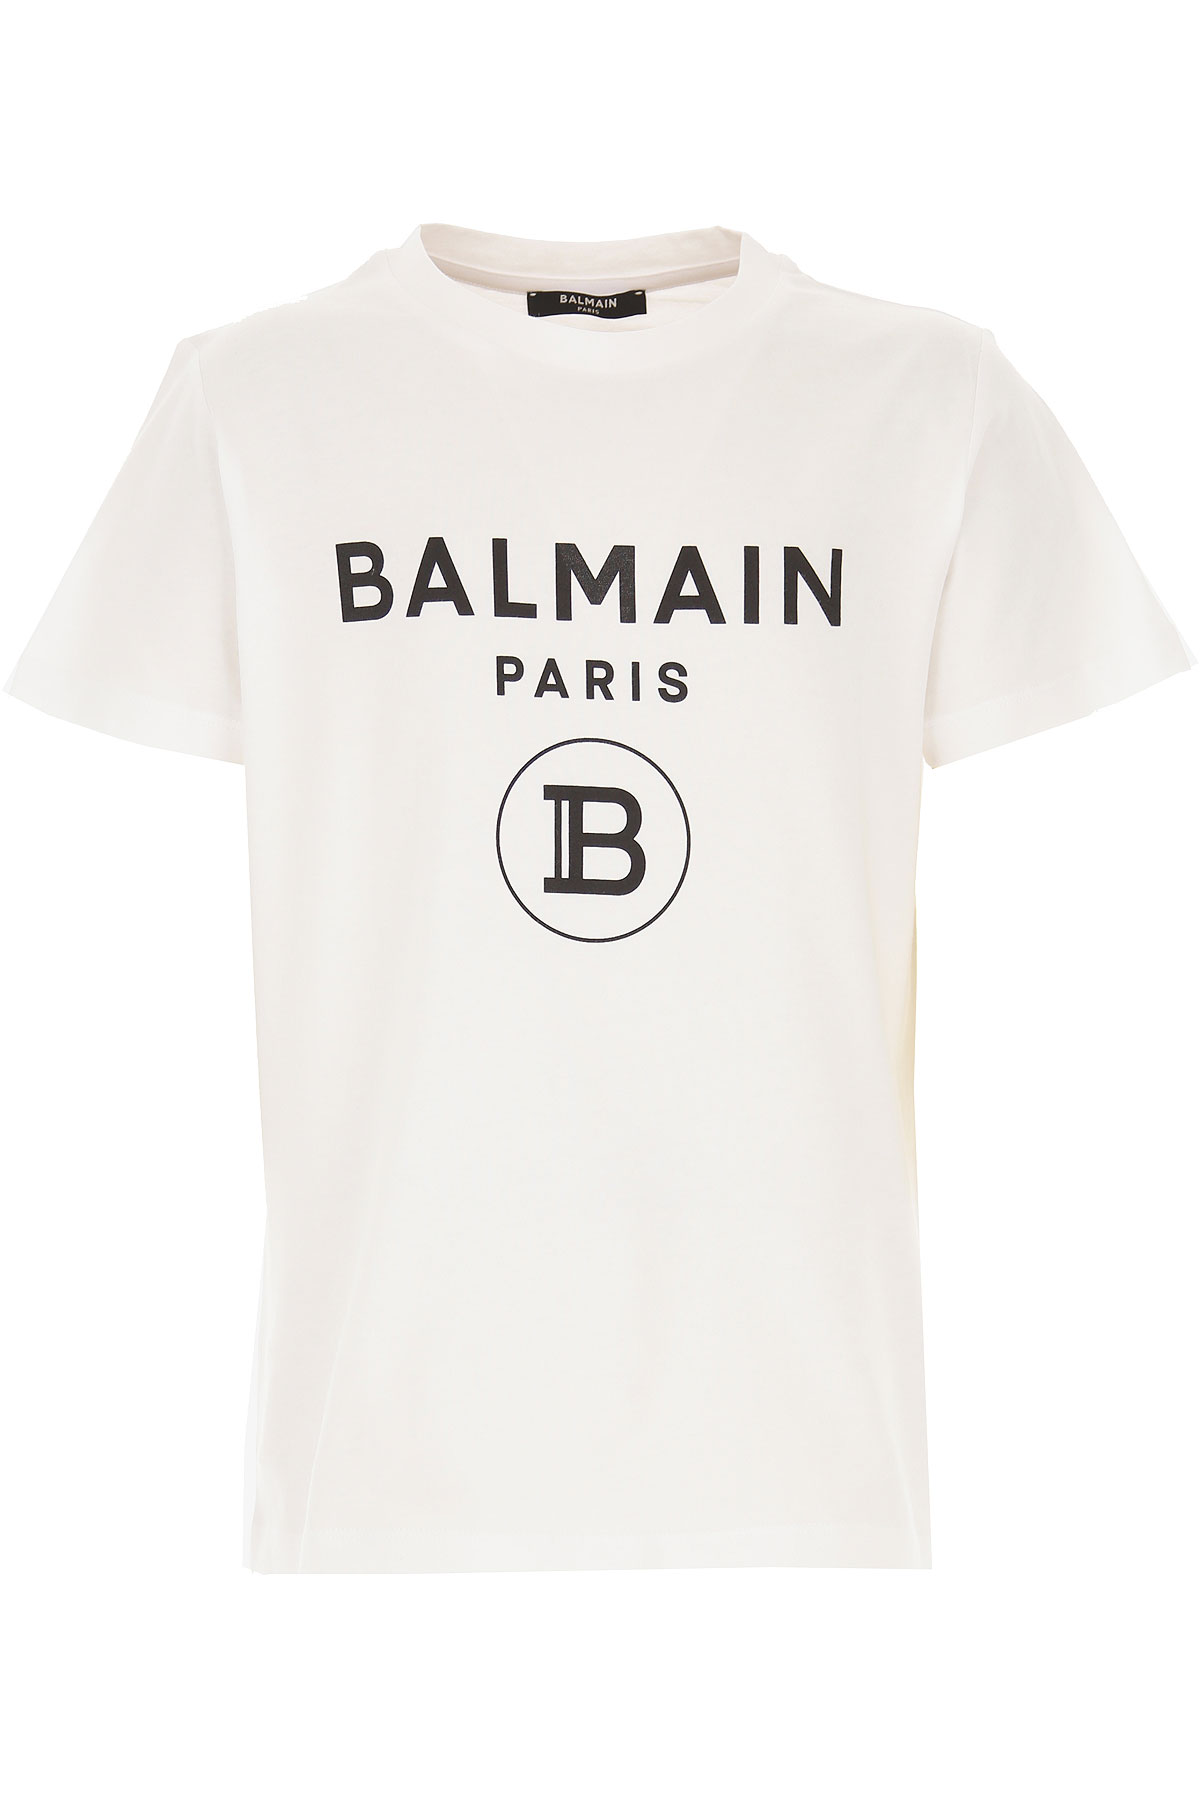 Kidswear Balmain, Style code: 6m8701-mx030-100